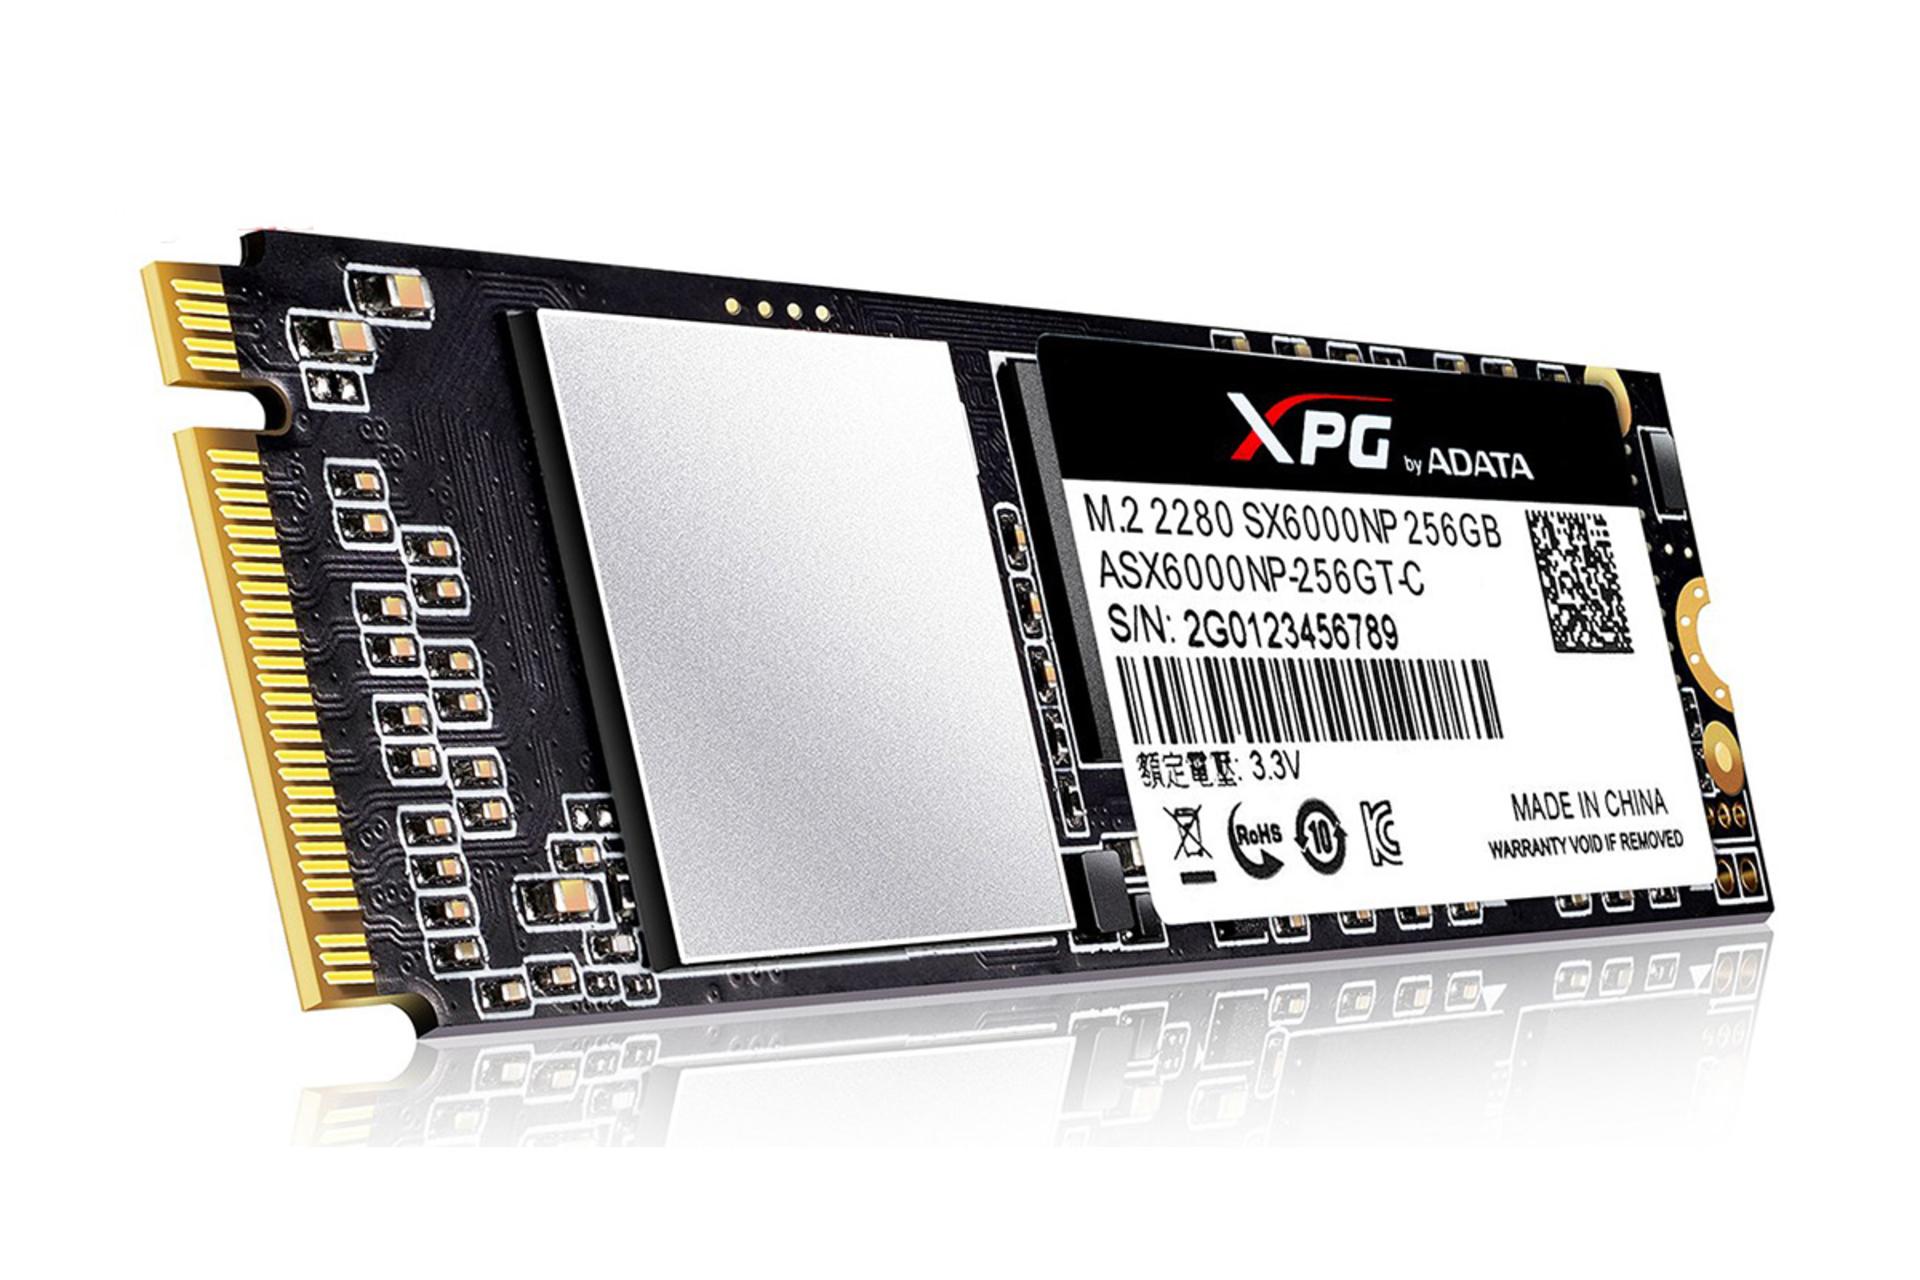 مرجع متخصصين ايران XPG SX6000 Pro PCIe Gen3x4 M.2 2280 256GB